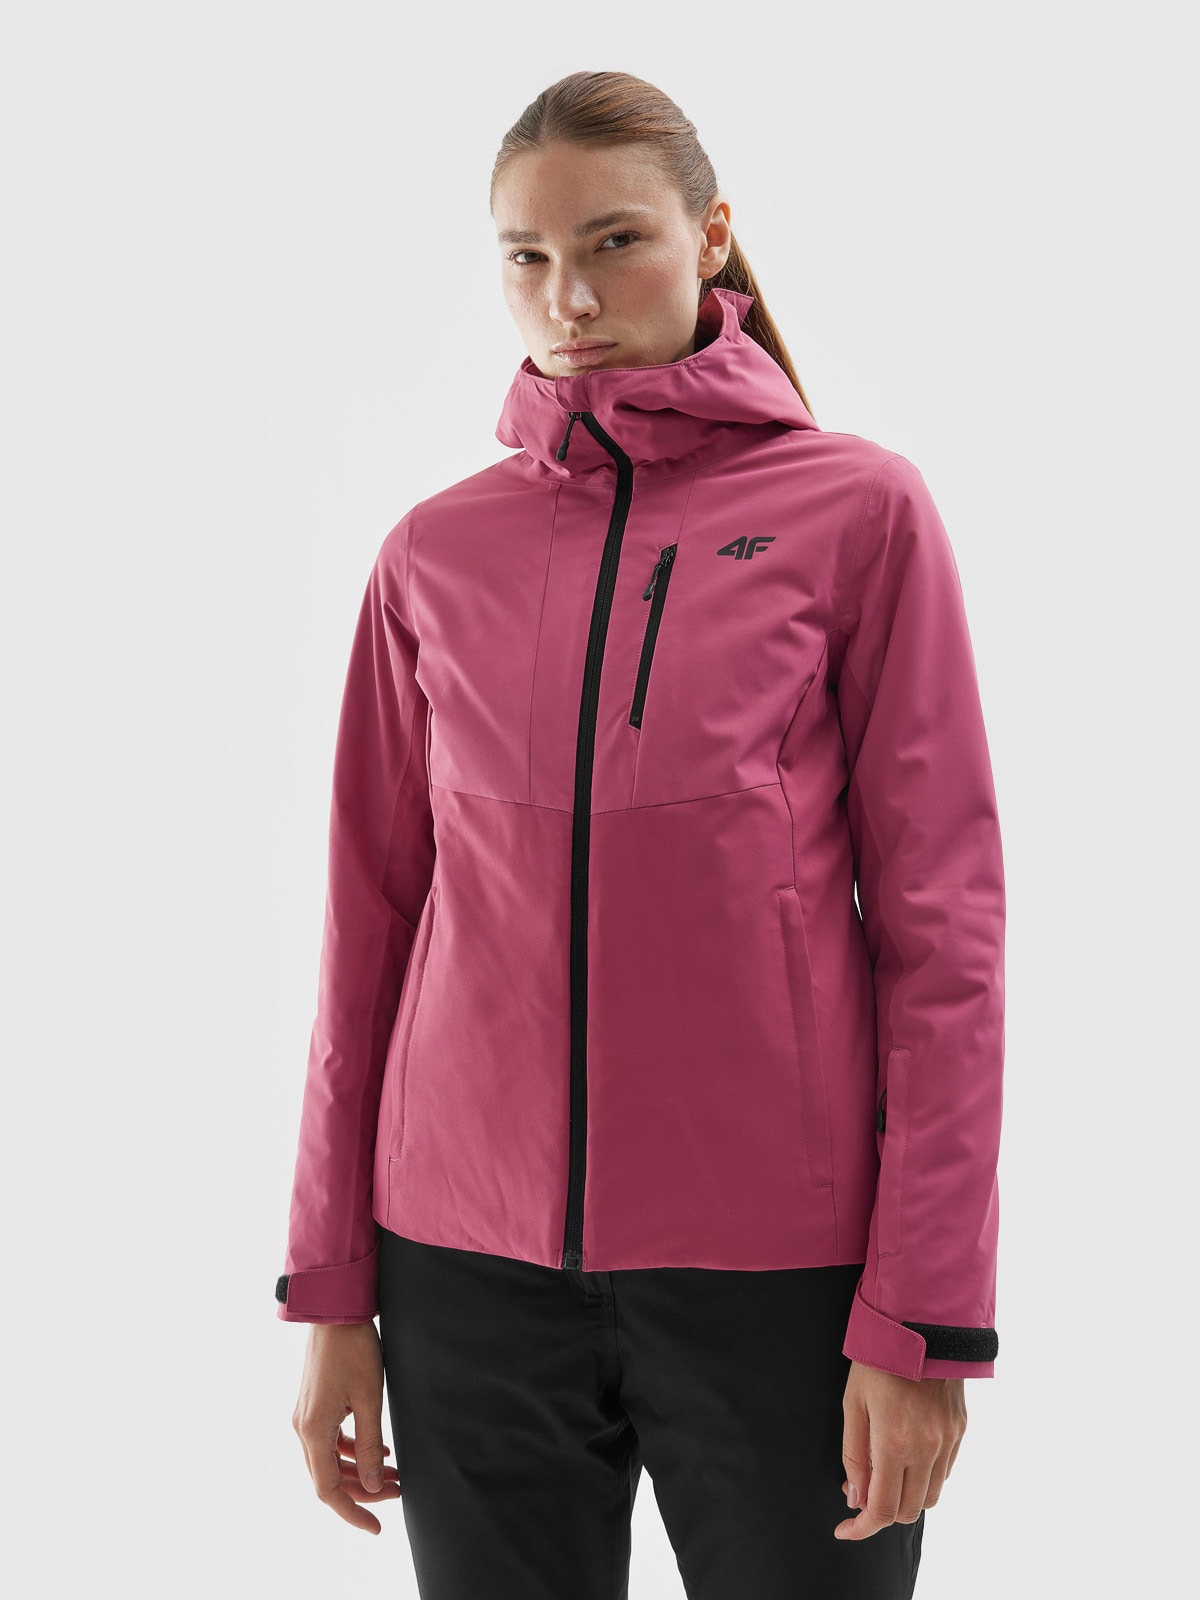 Dámska lyžiarska bunda s membránou 5000 - ružová